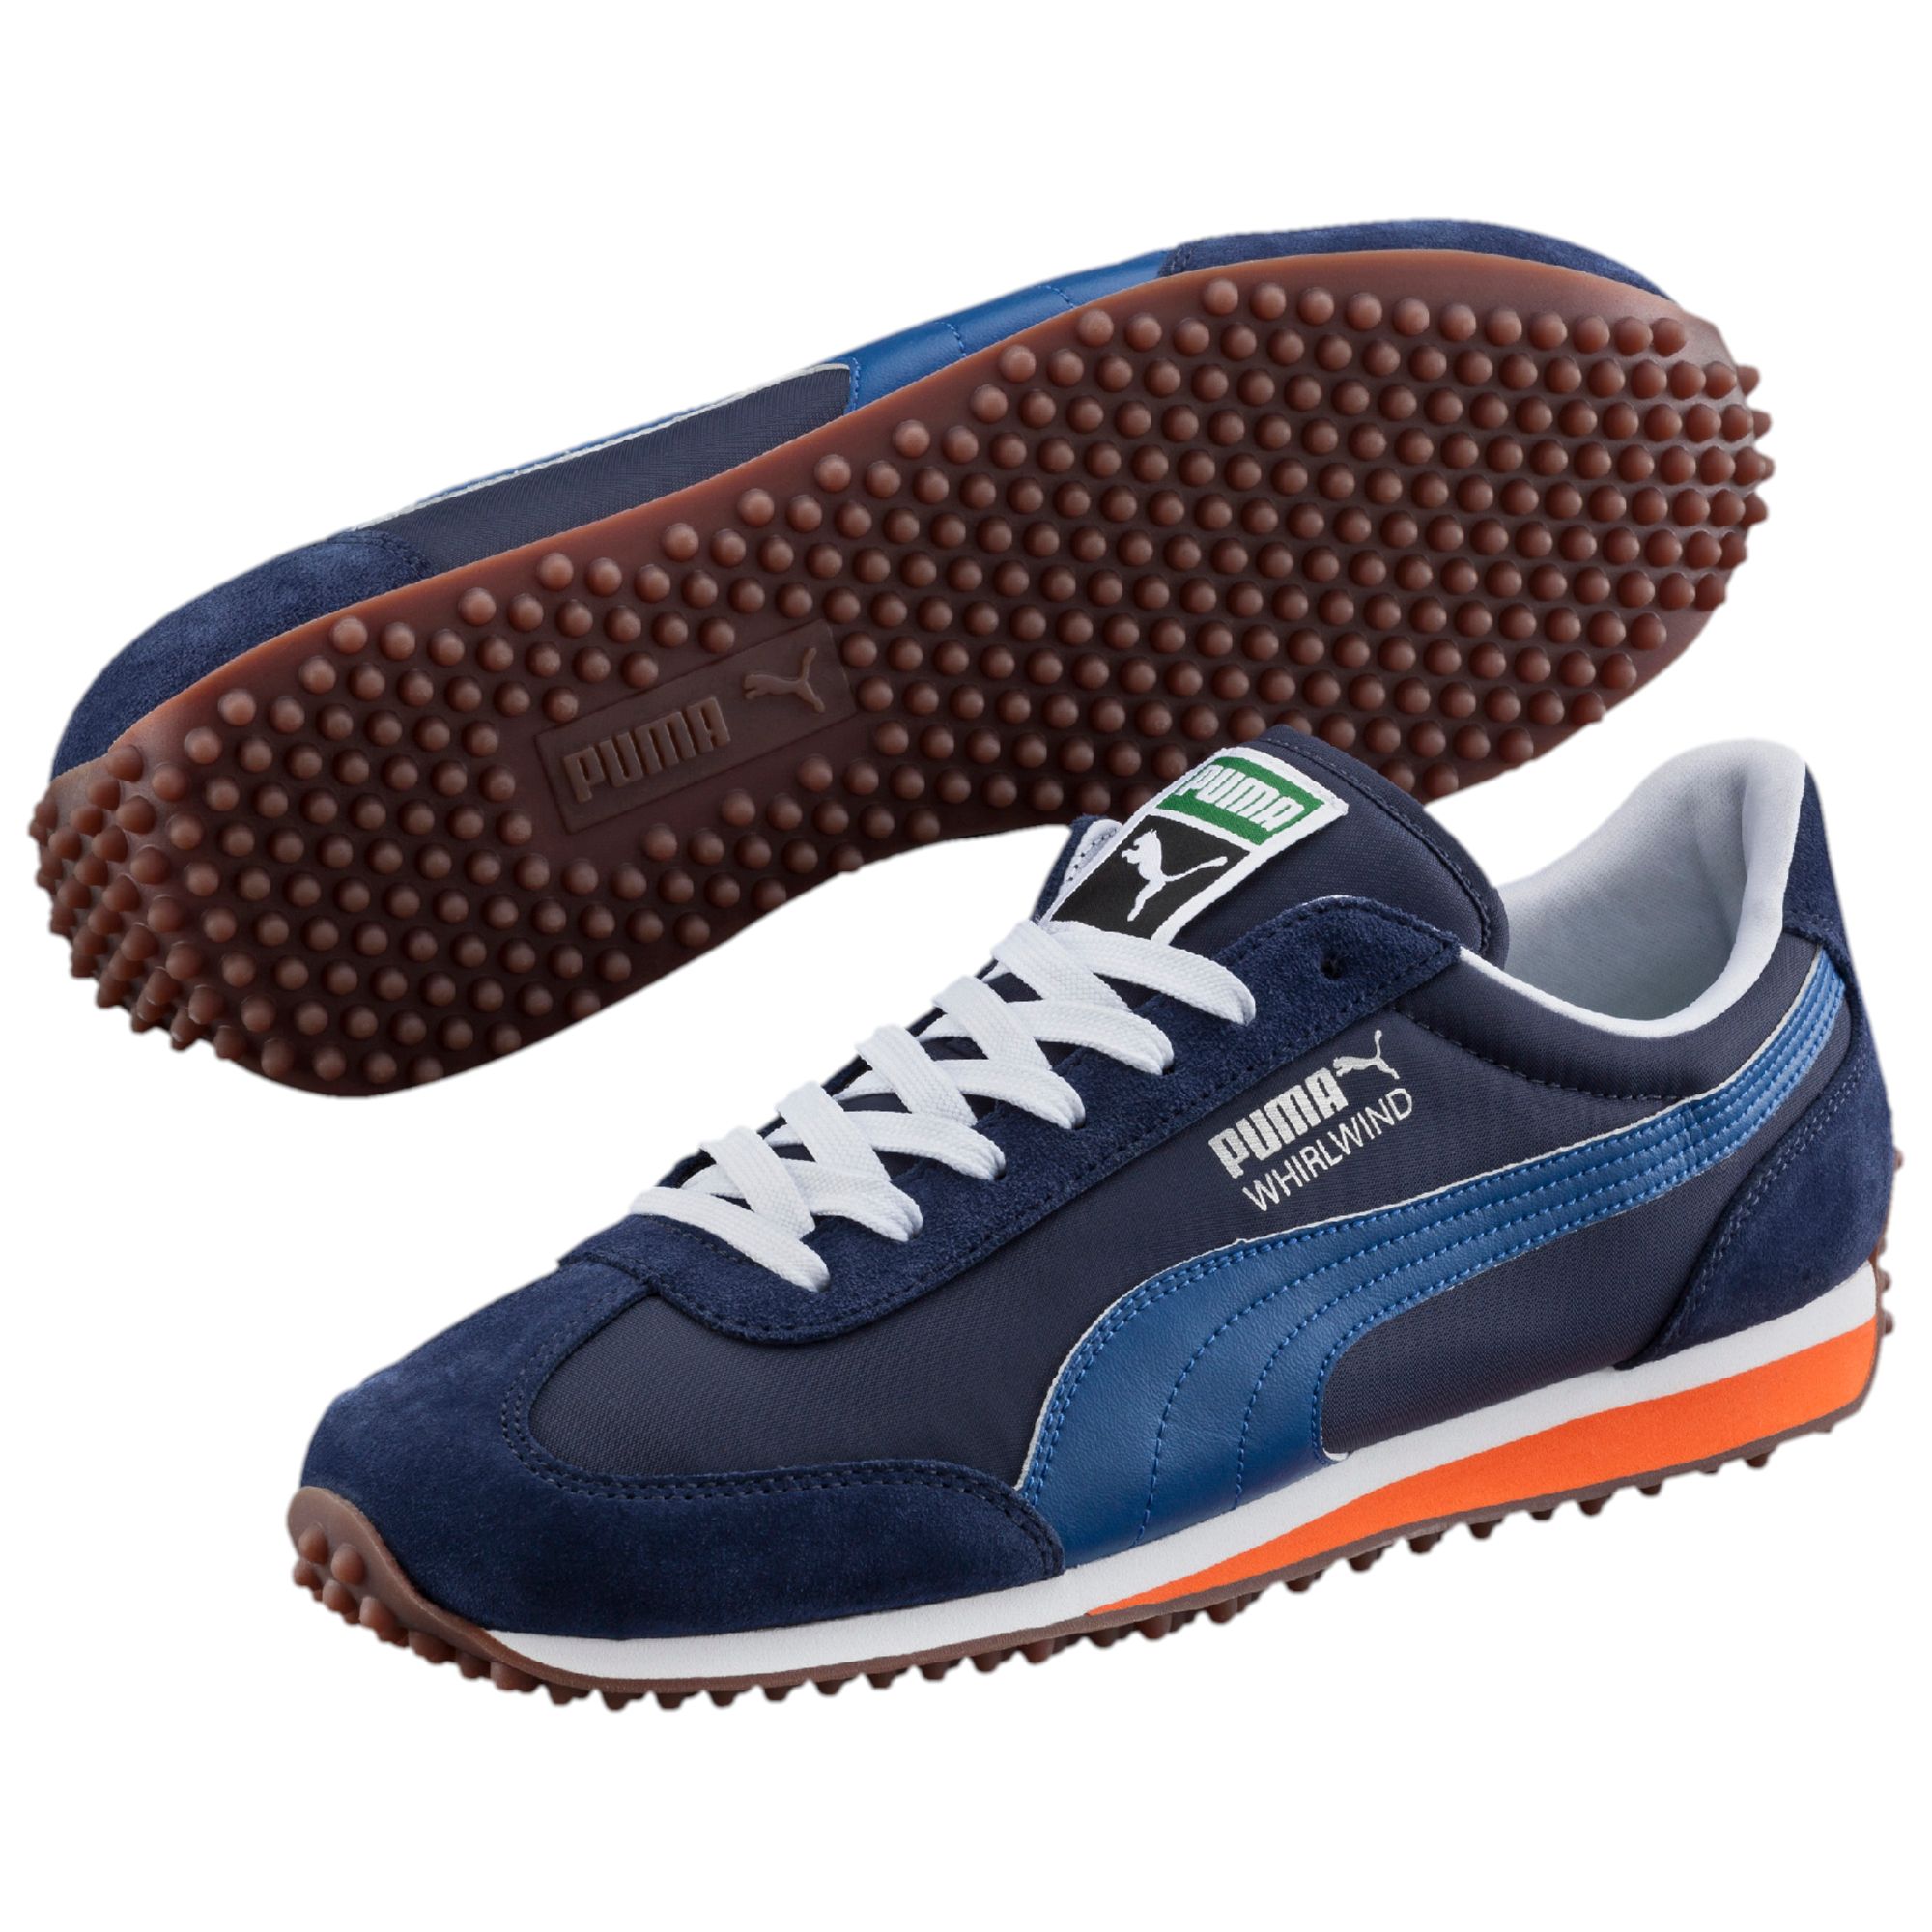 PUMA Whirlwind Classic Footwear Sneakers Sport Shoe Men New | eBay